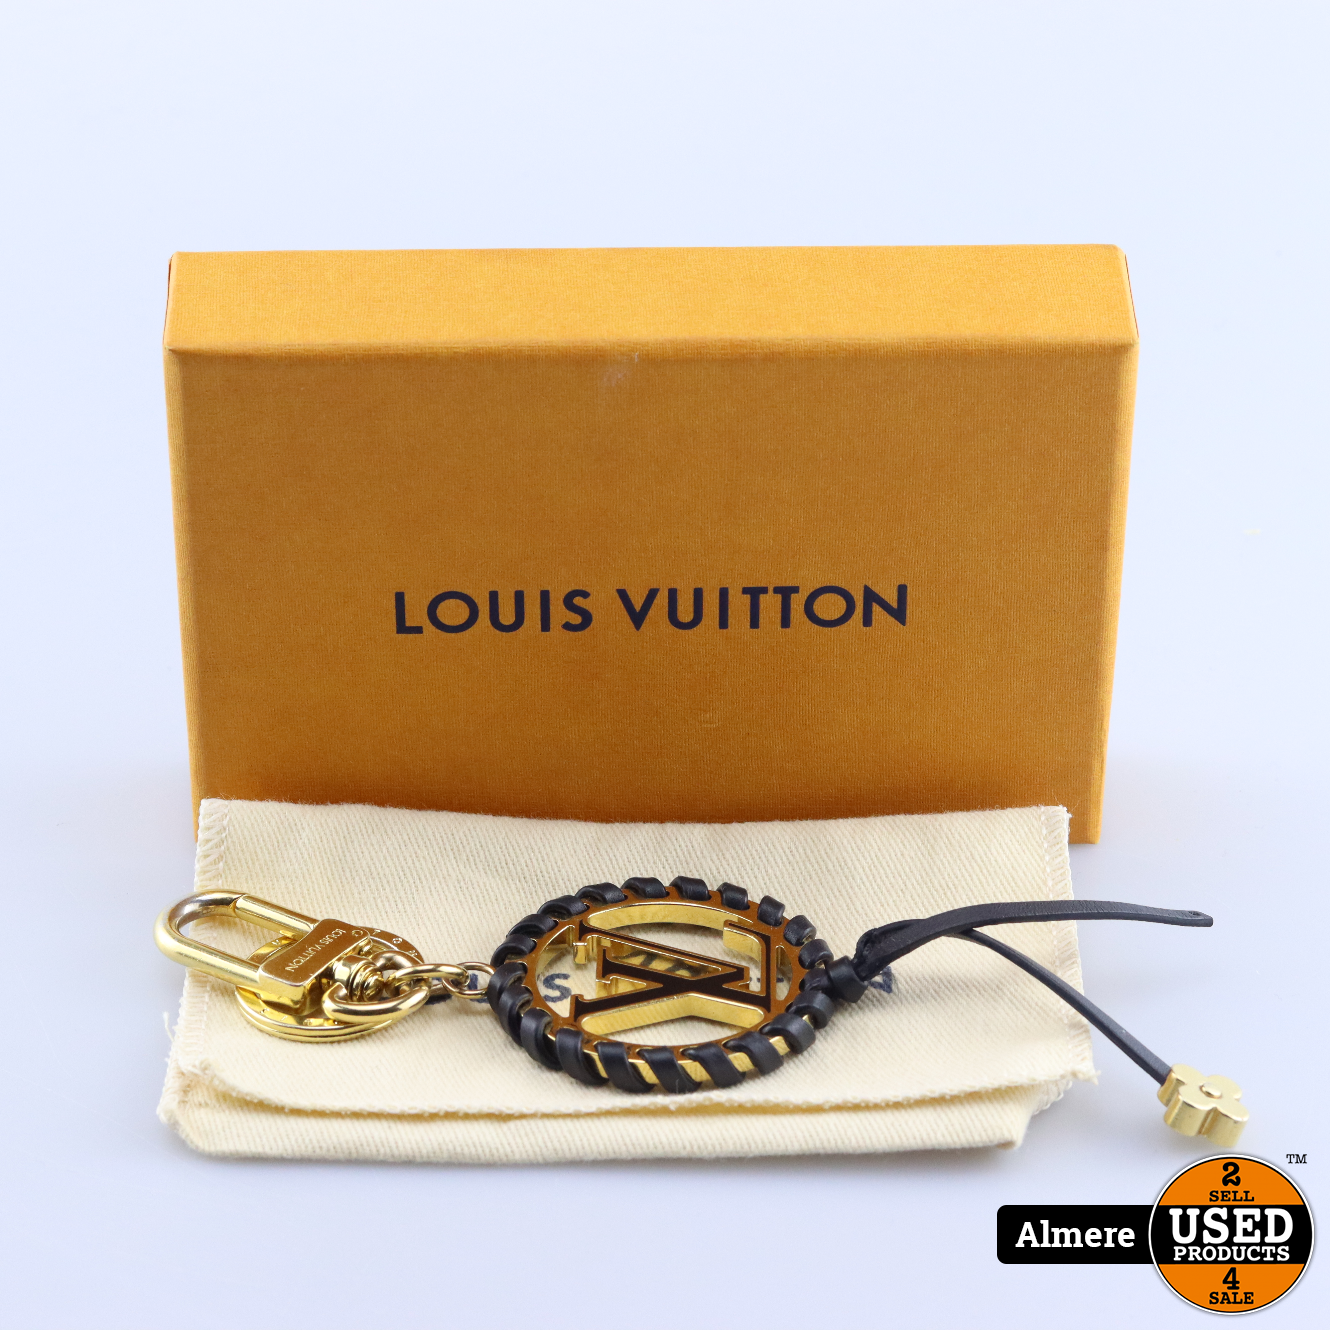 LOUIS VUITTON Porte Cles Cianne Pastilles Bag Charm Chain M65386